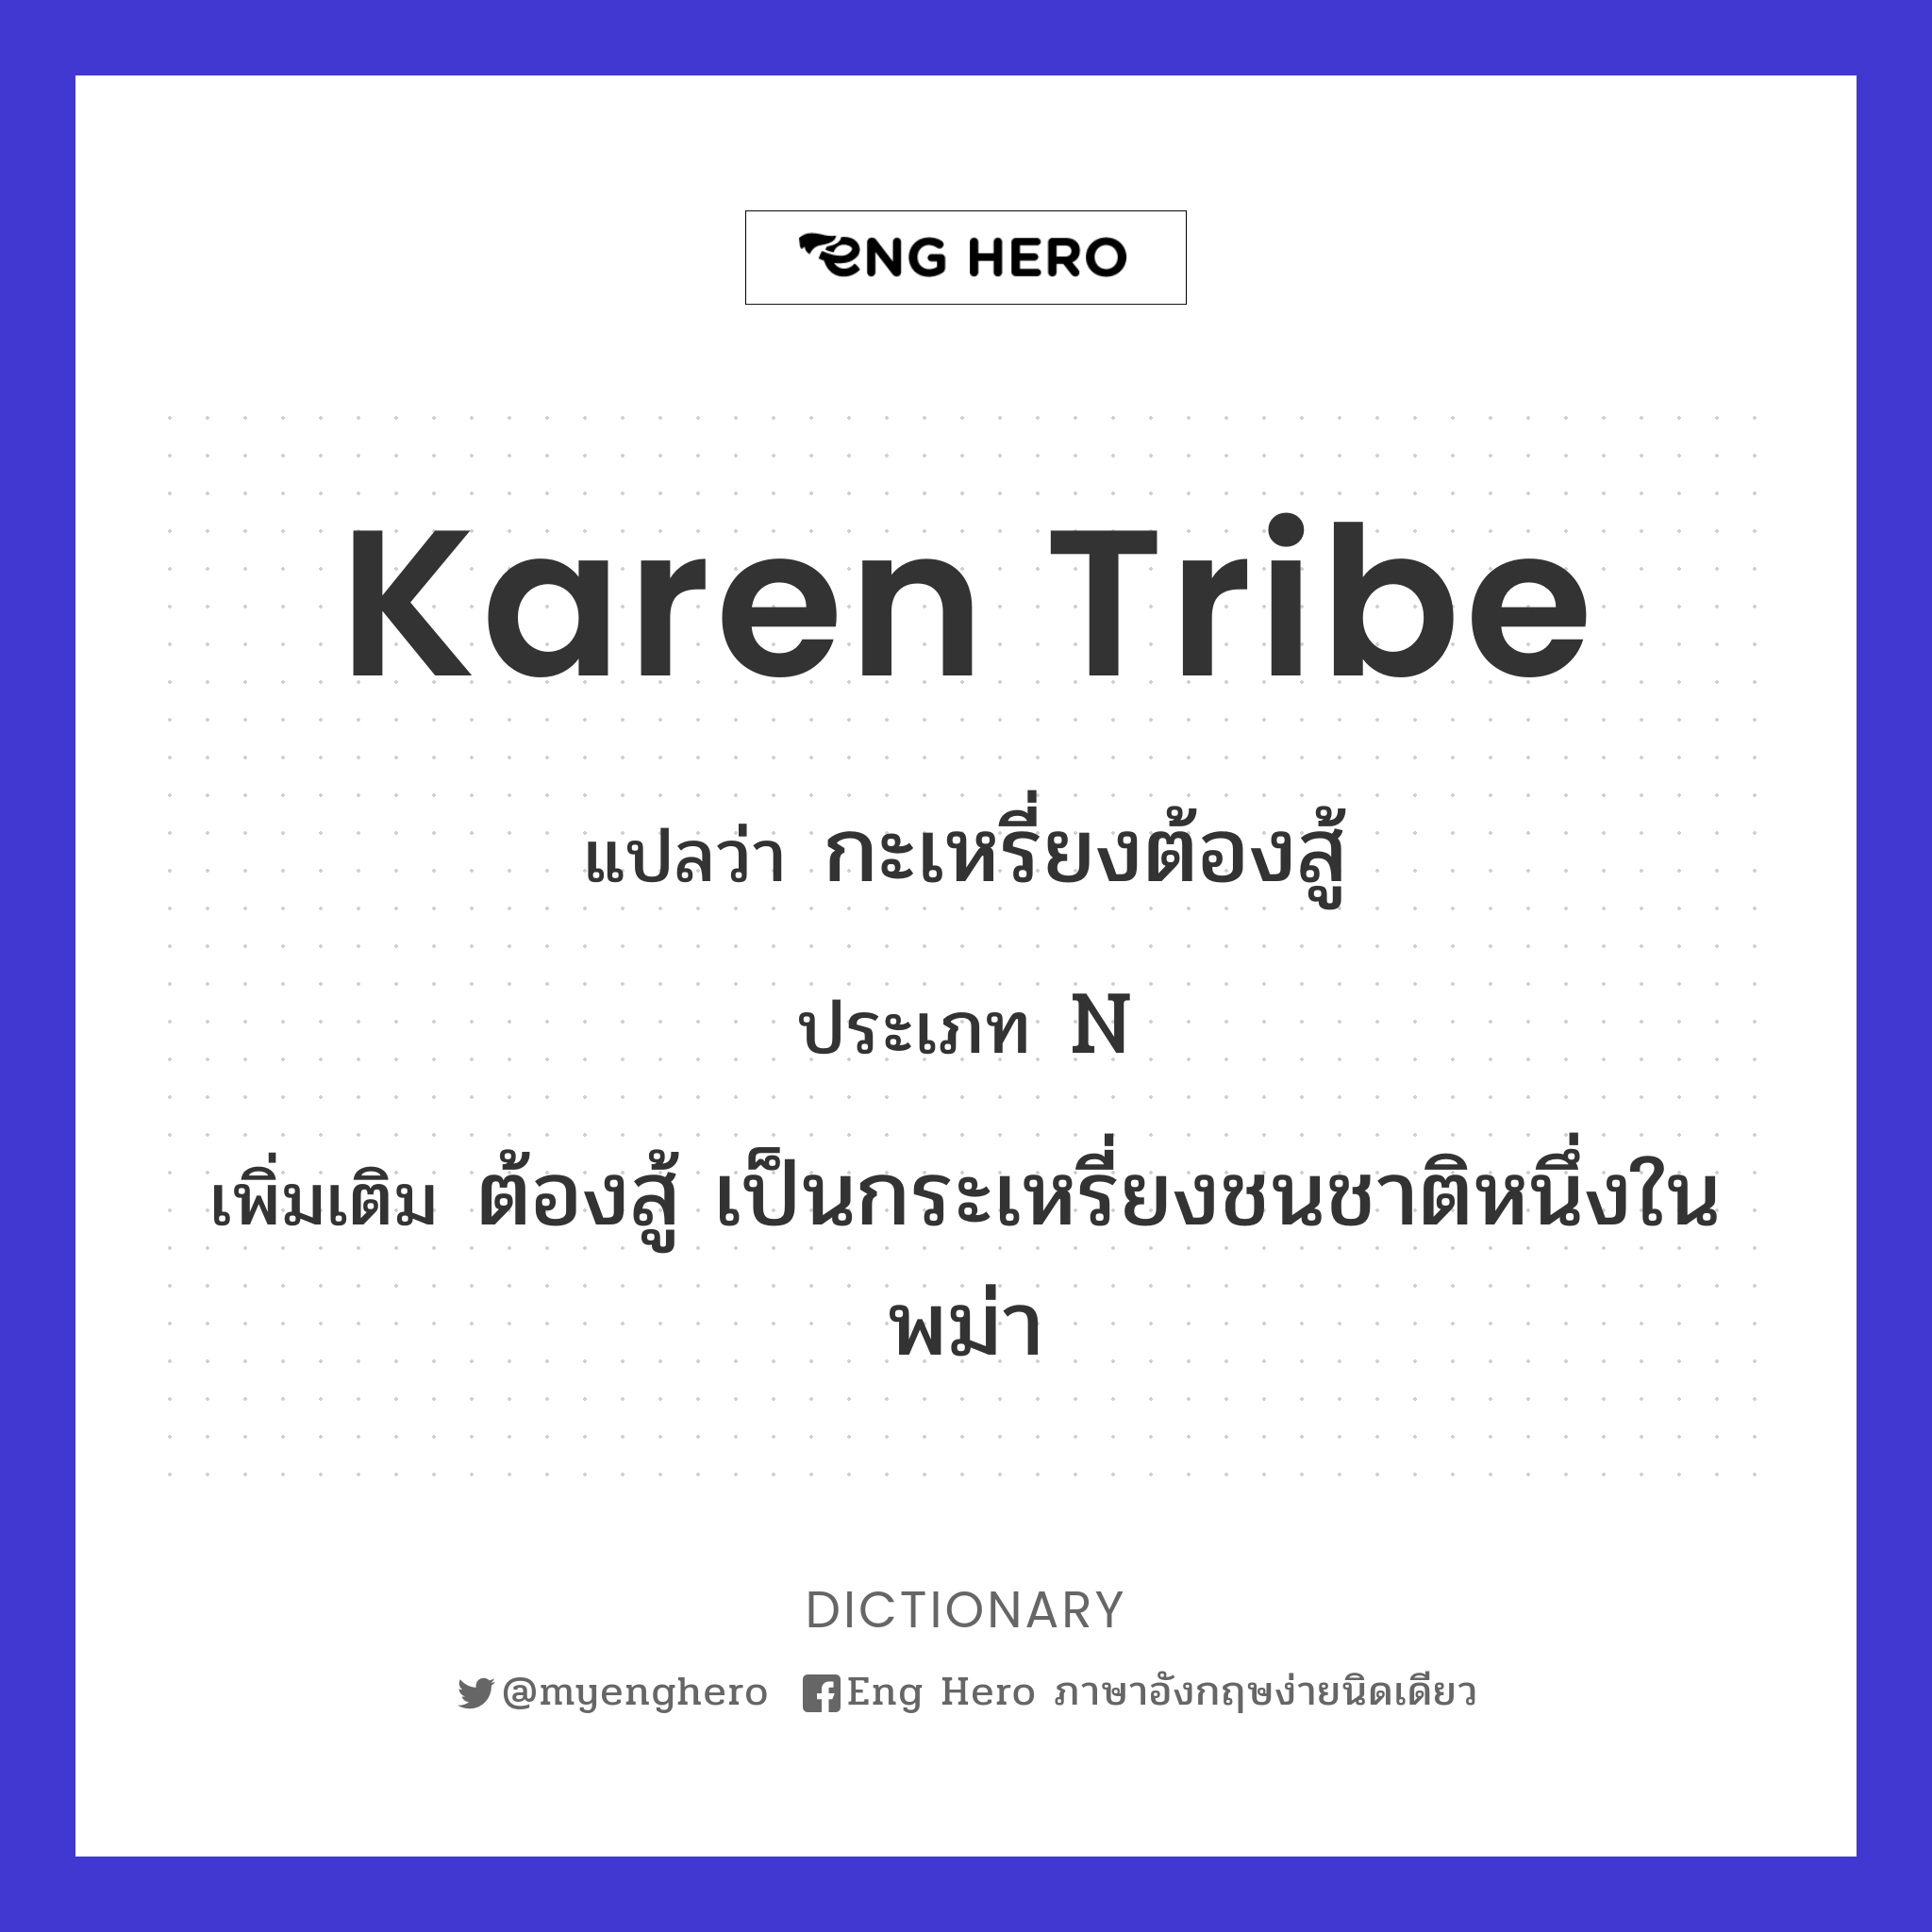 Karen tribe